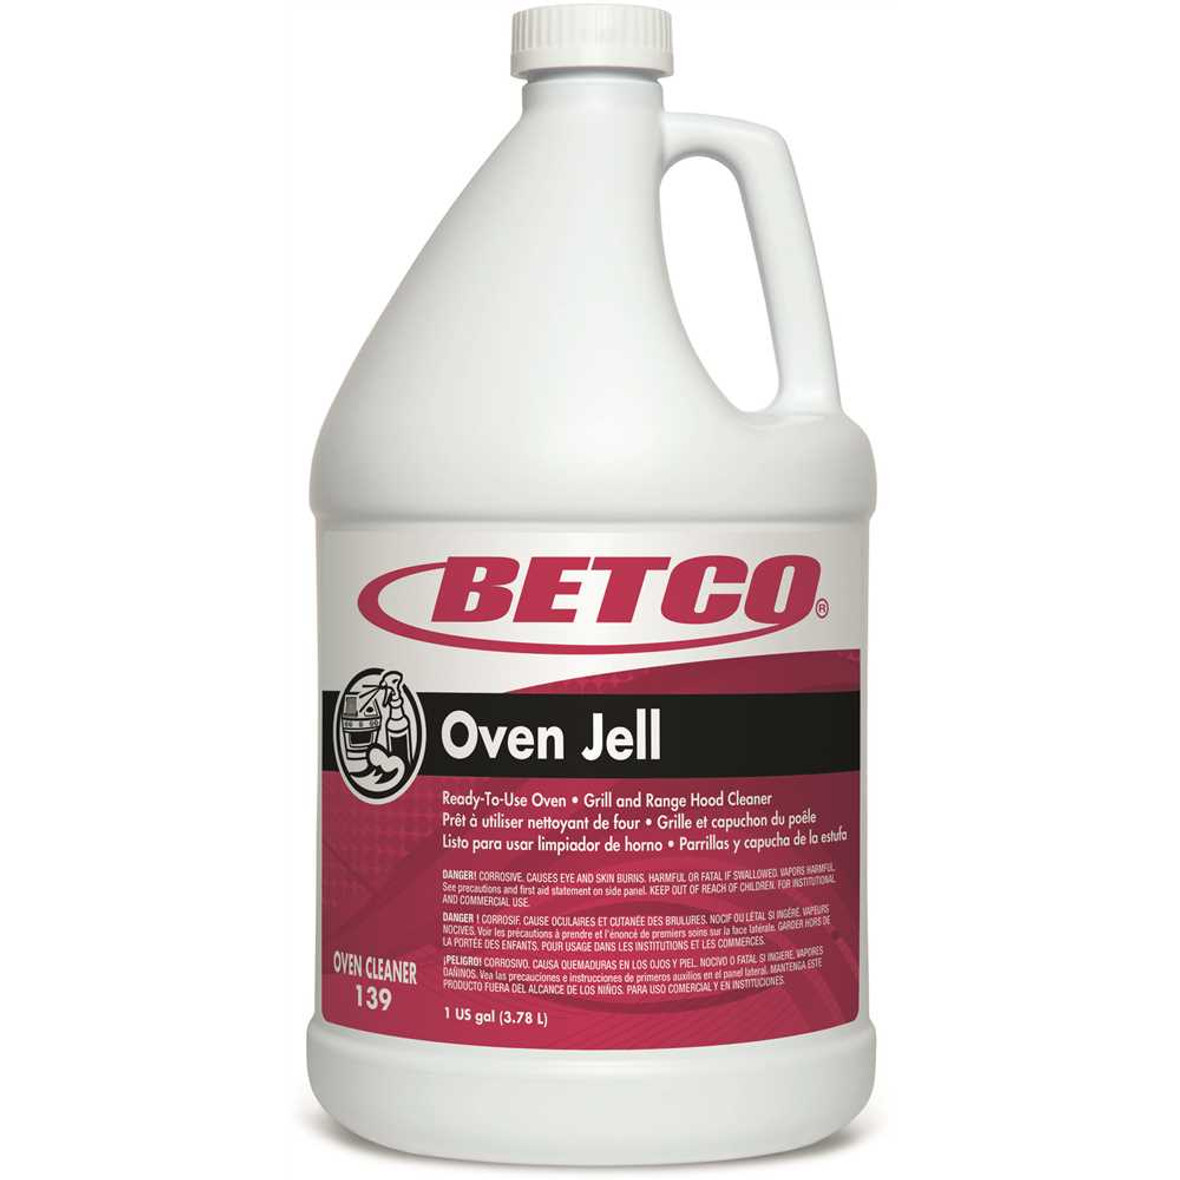 Betco Range Hood Cleaner Oven Jell, Lemon Scent 1 Gallon, 4 Per Case